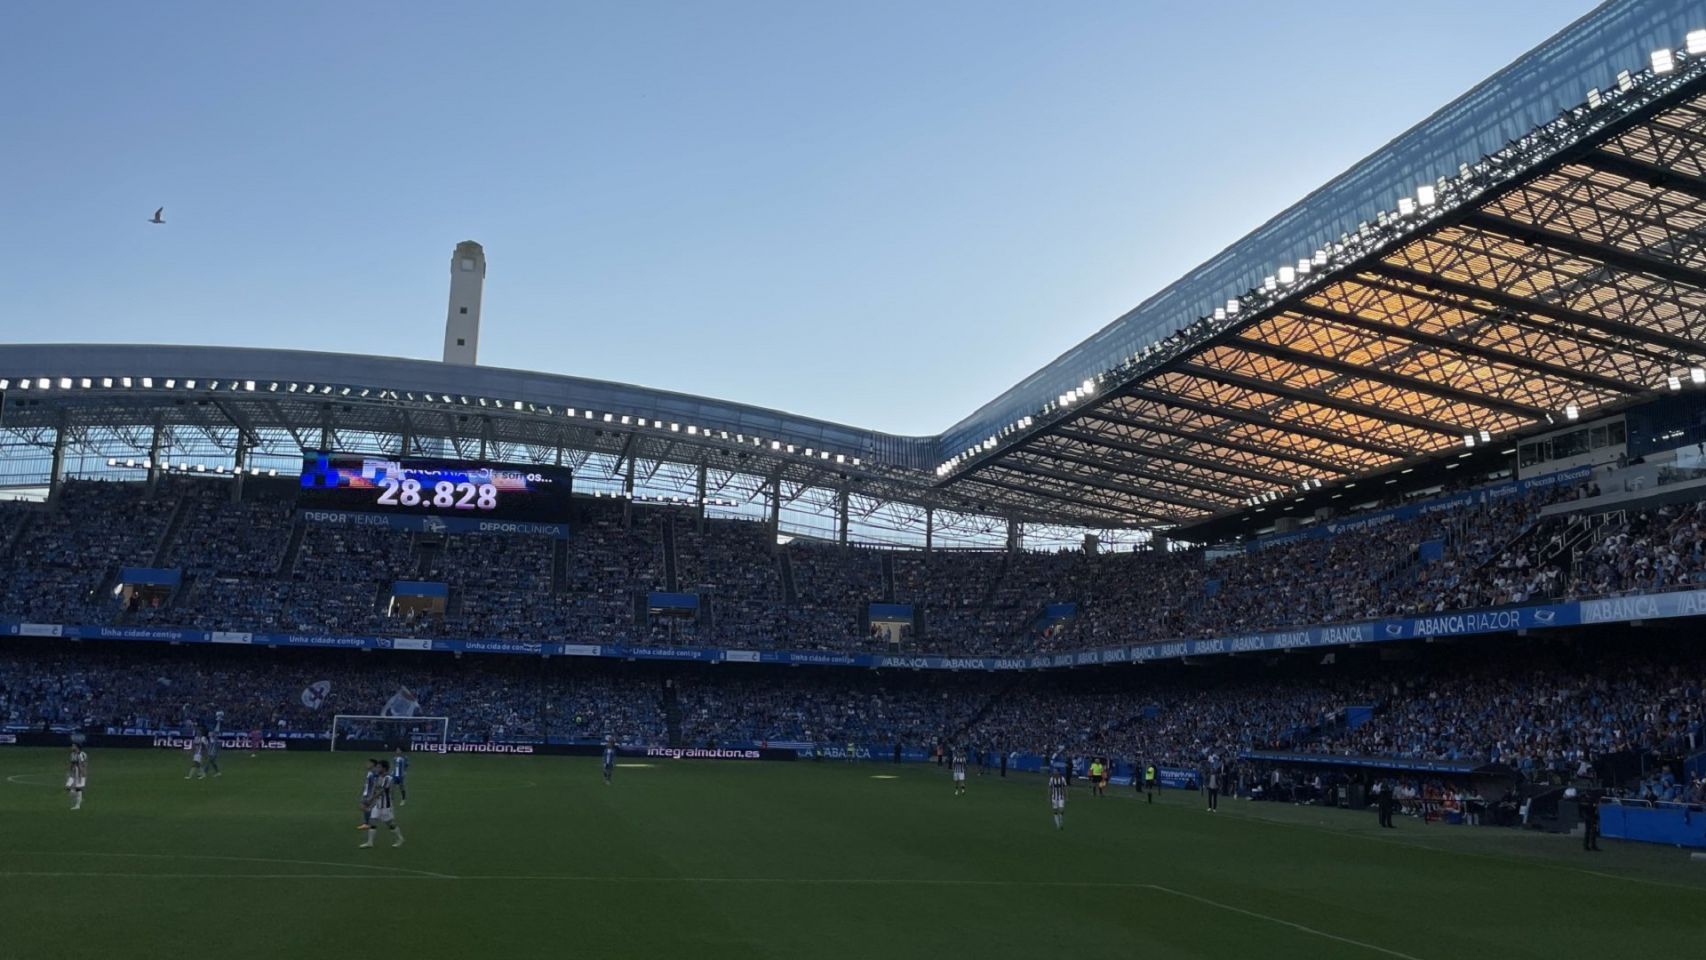 Récord de asistencia en el Estadio de Riazor con 28.828 personas durante la temporada pasada.